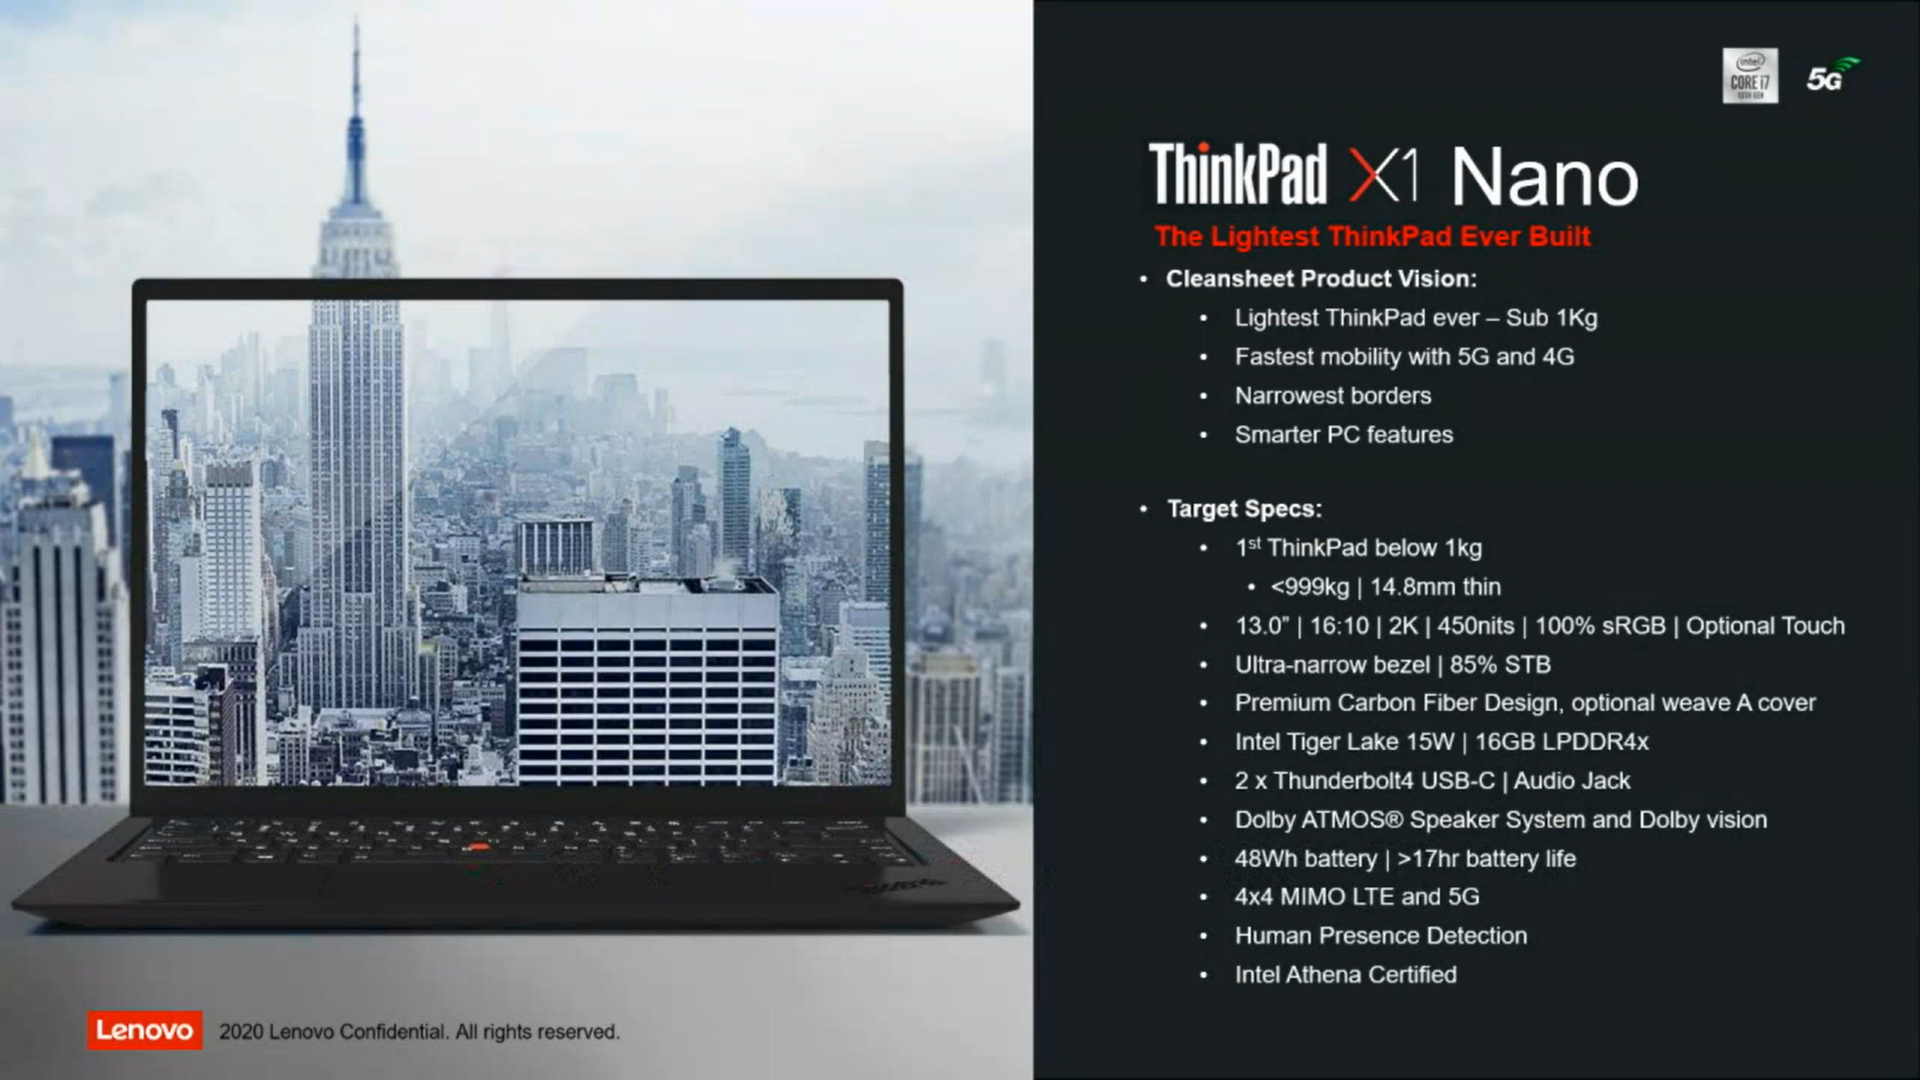 Thinkpad X1 Nanoがリーク 5g対応で1kg切り すまほん